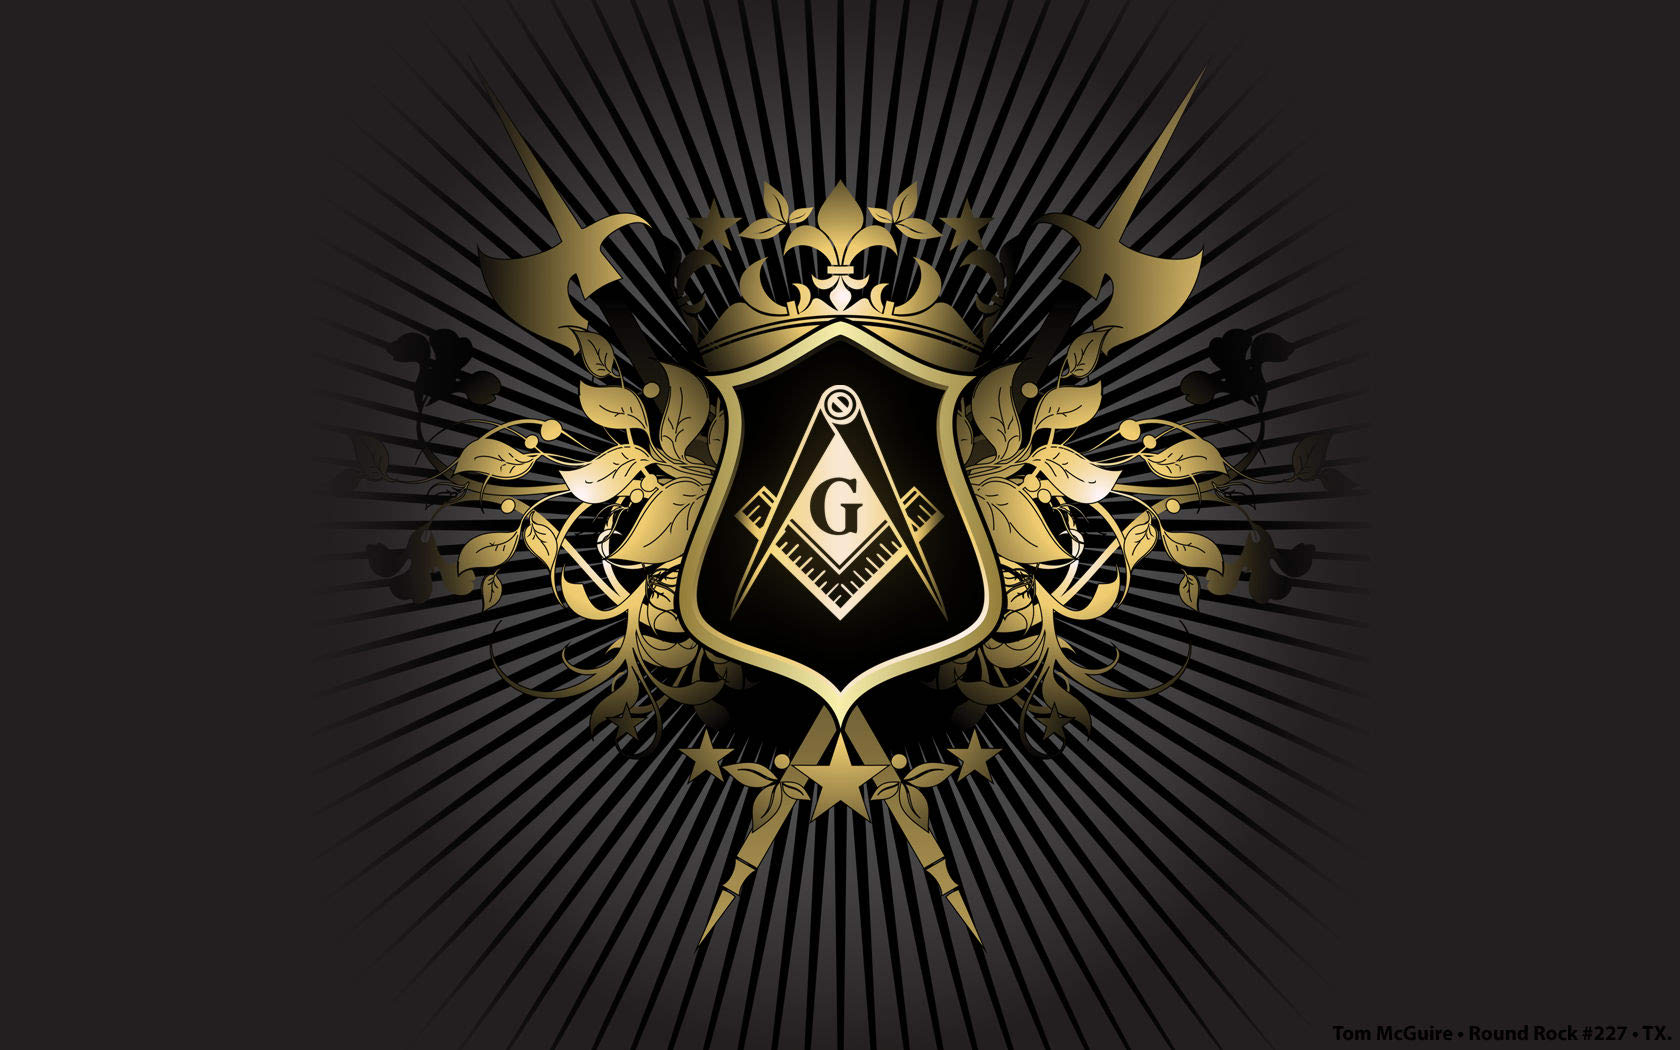 5. influence of freemasons